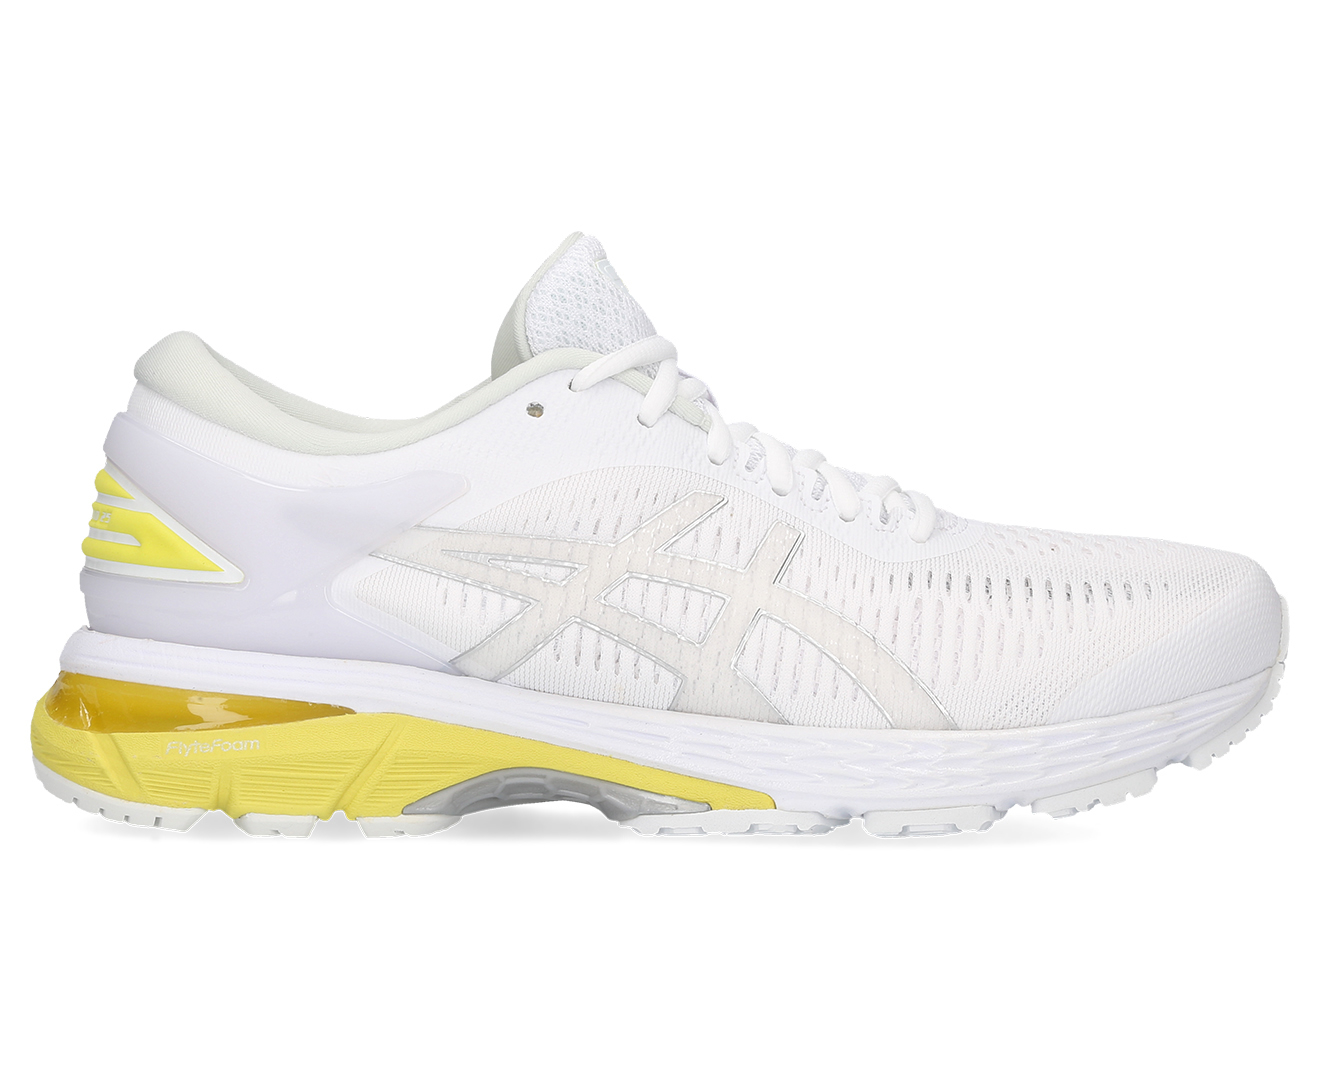 ASICS Women's GEL-Kayano 25 Running Shoes - White/Lemon Spark | eBay